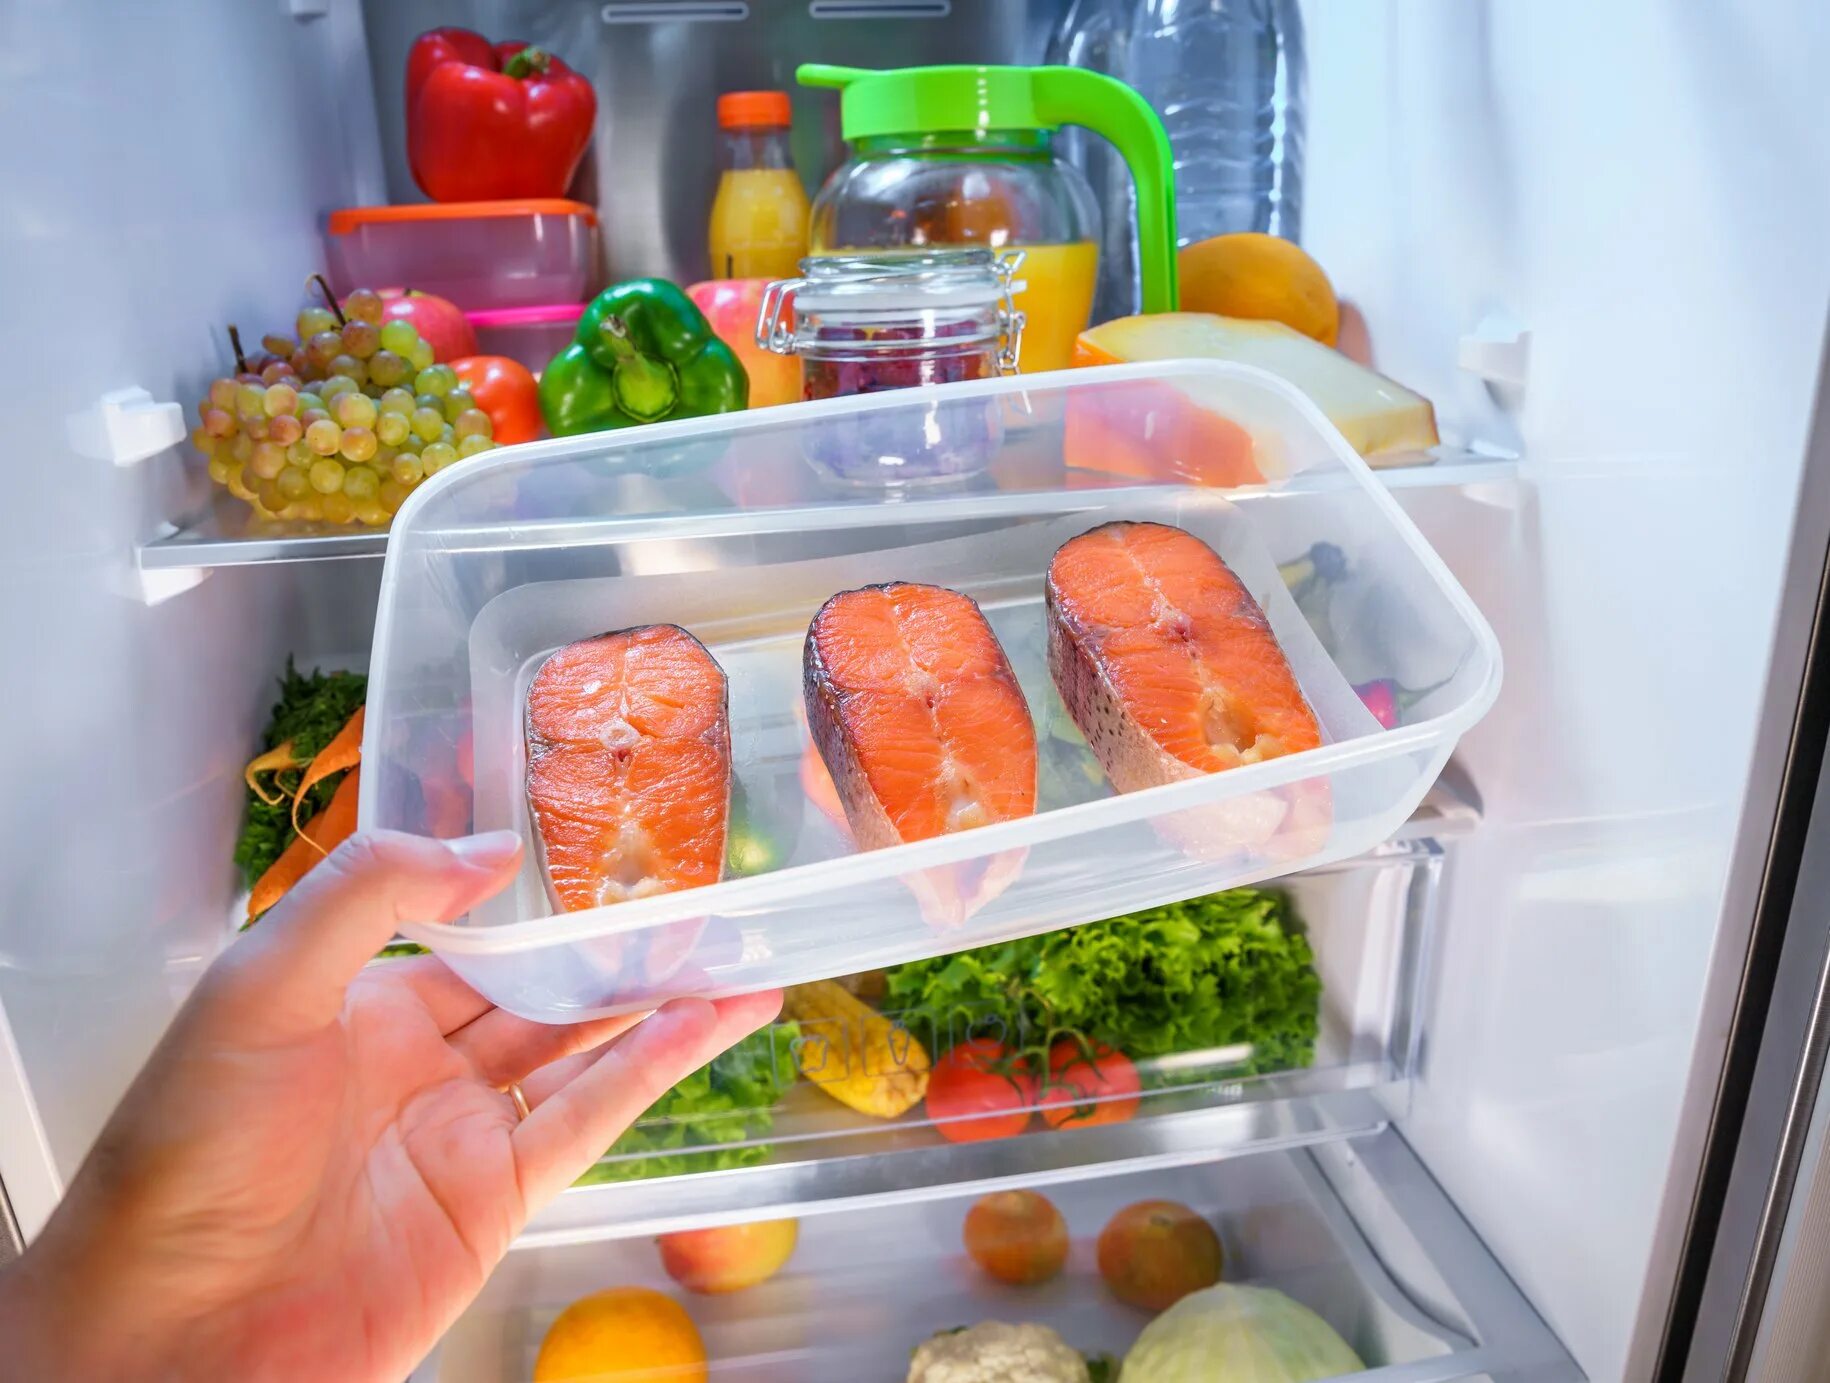 Сколько можно размораживать холодильник. Хранение продуктов. Холодильник с едой. Холодильник с продуктами. Хранение готовых блюд в холодильнике.